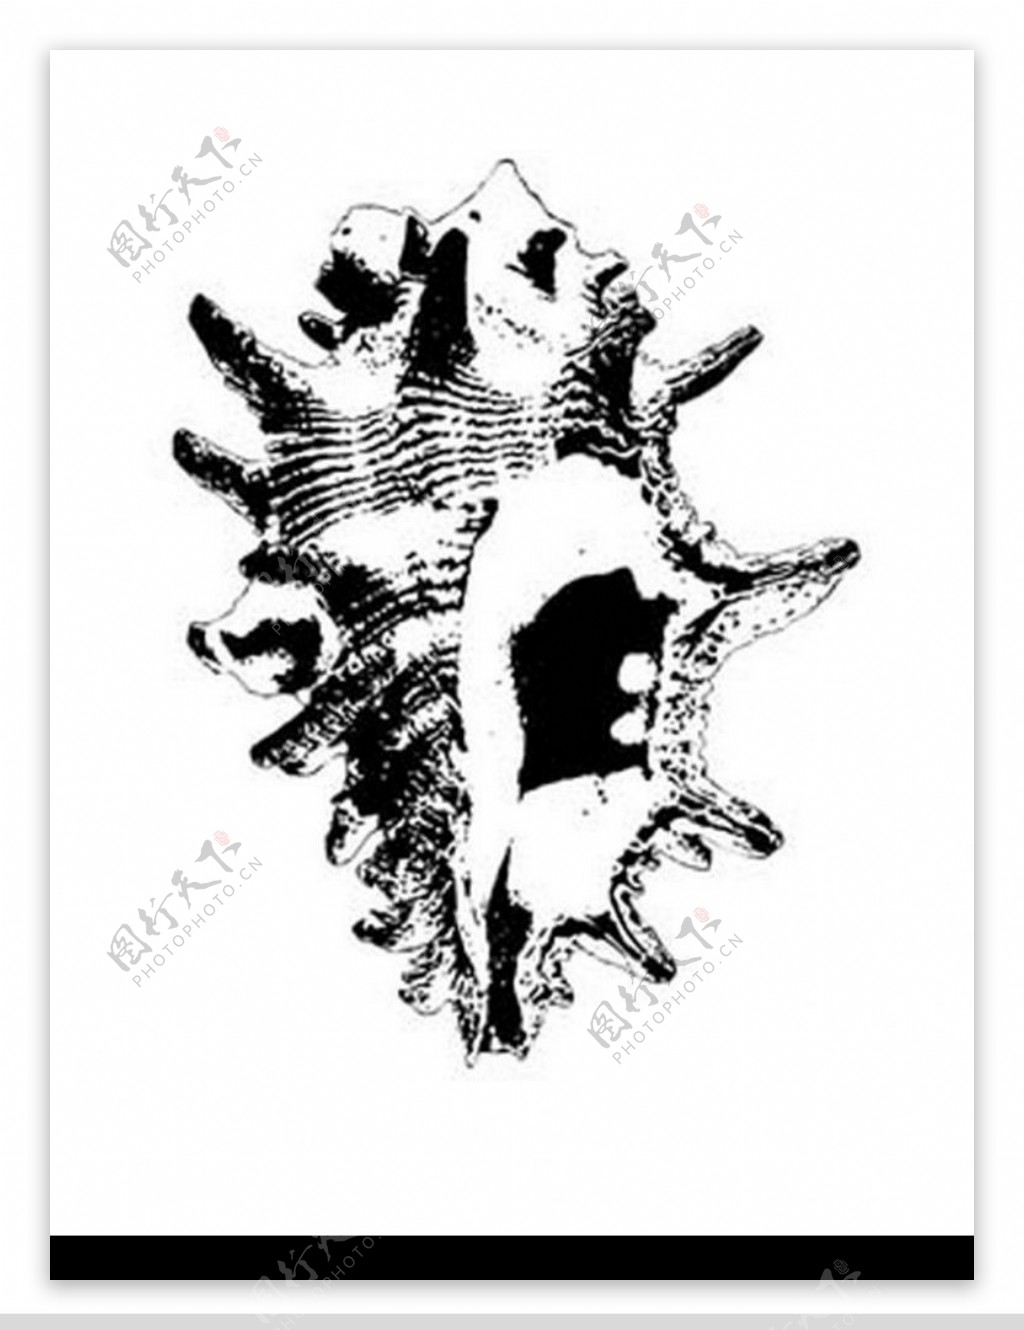 海螺黑白图图片